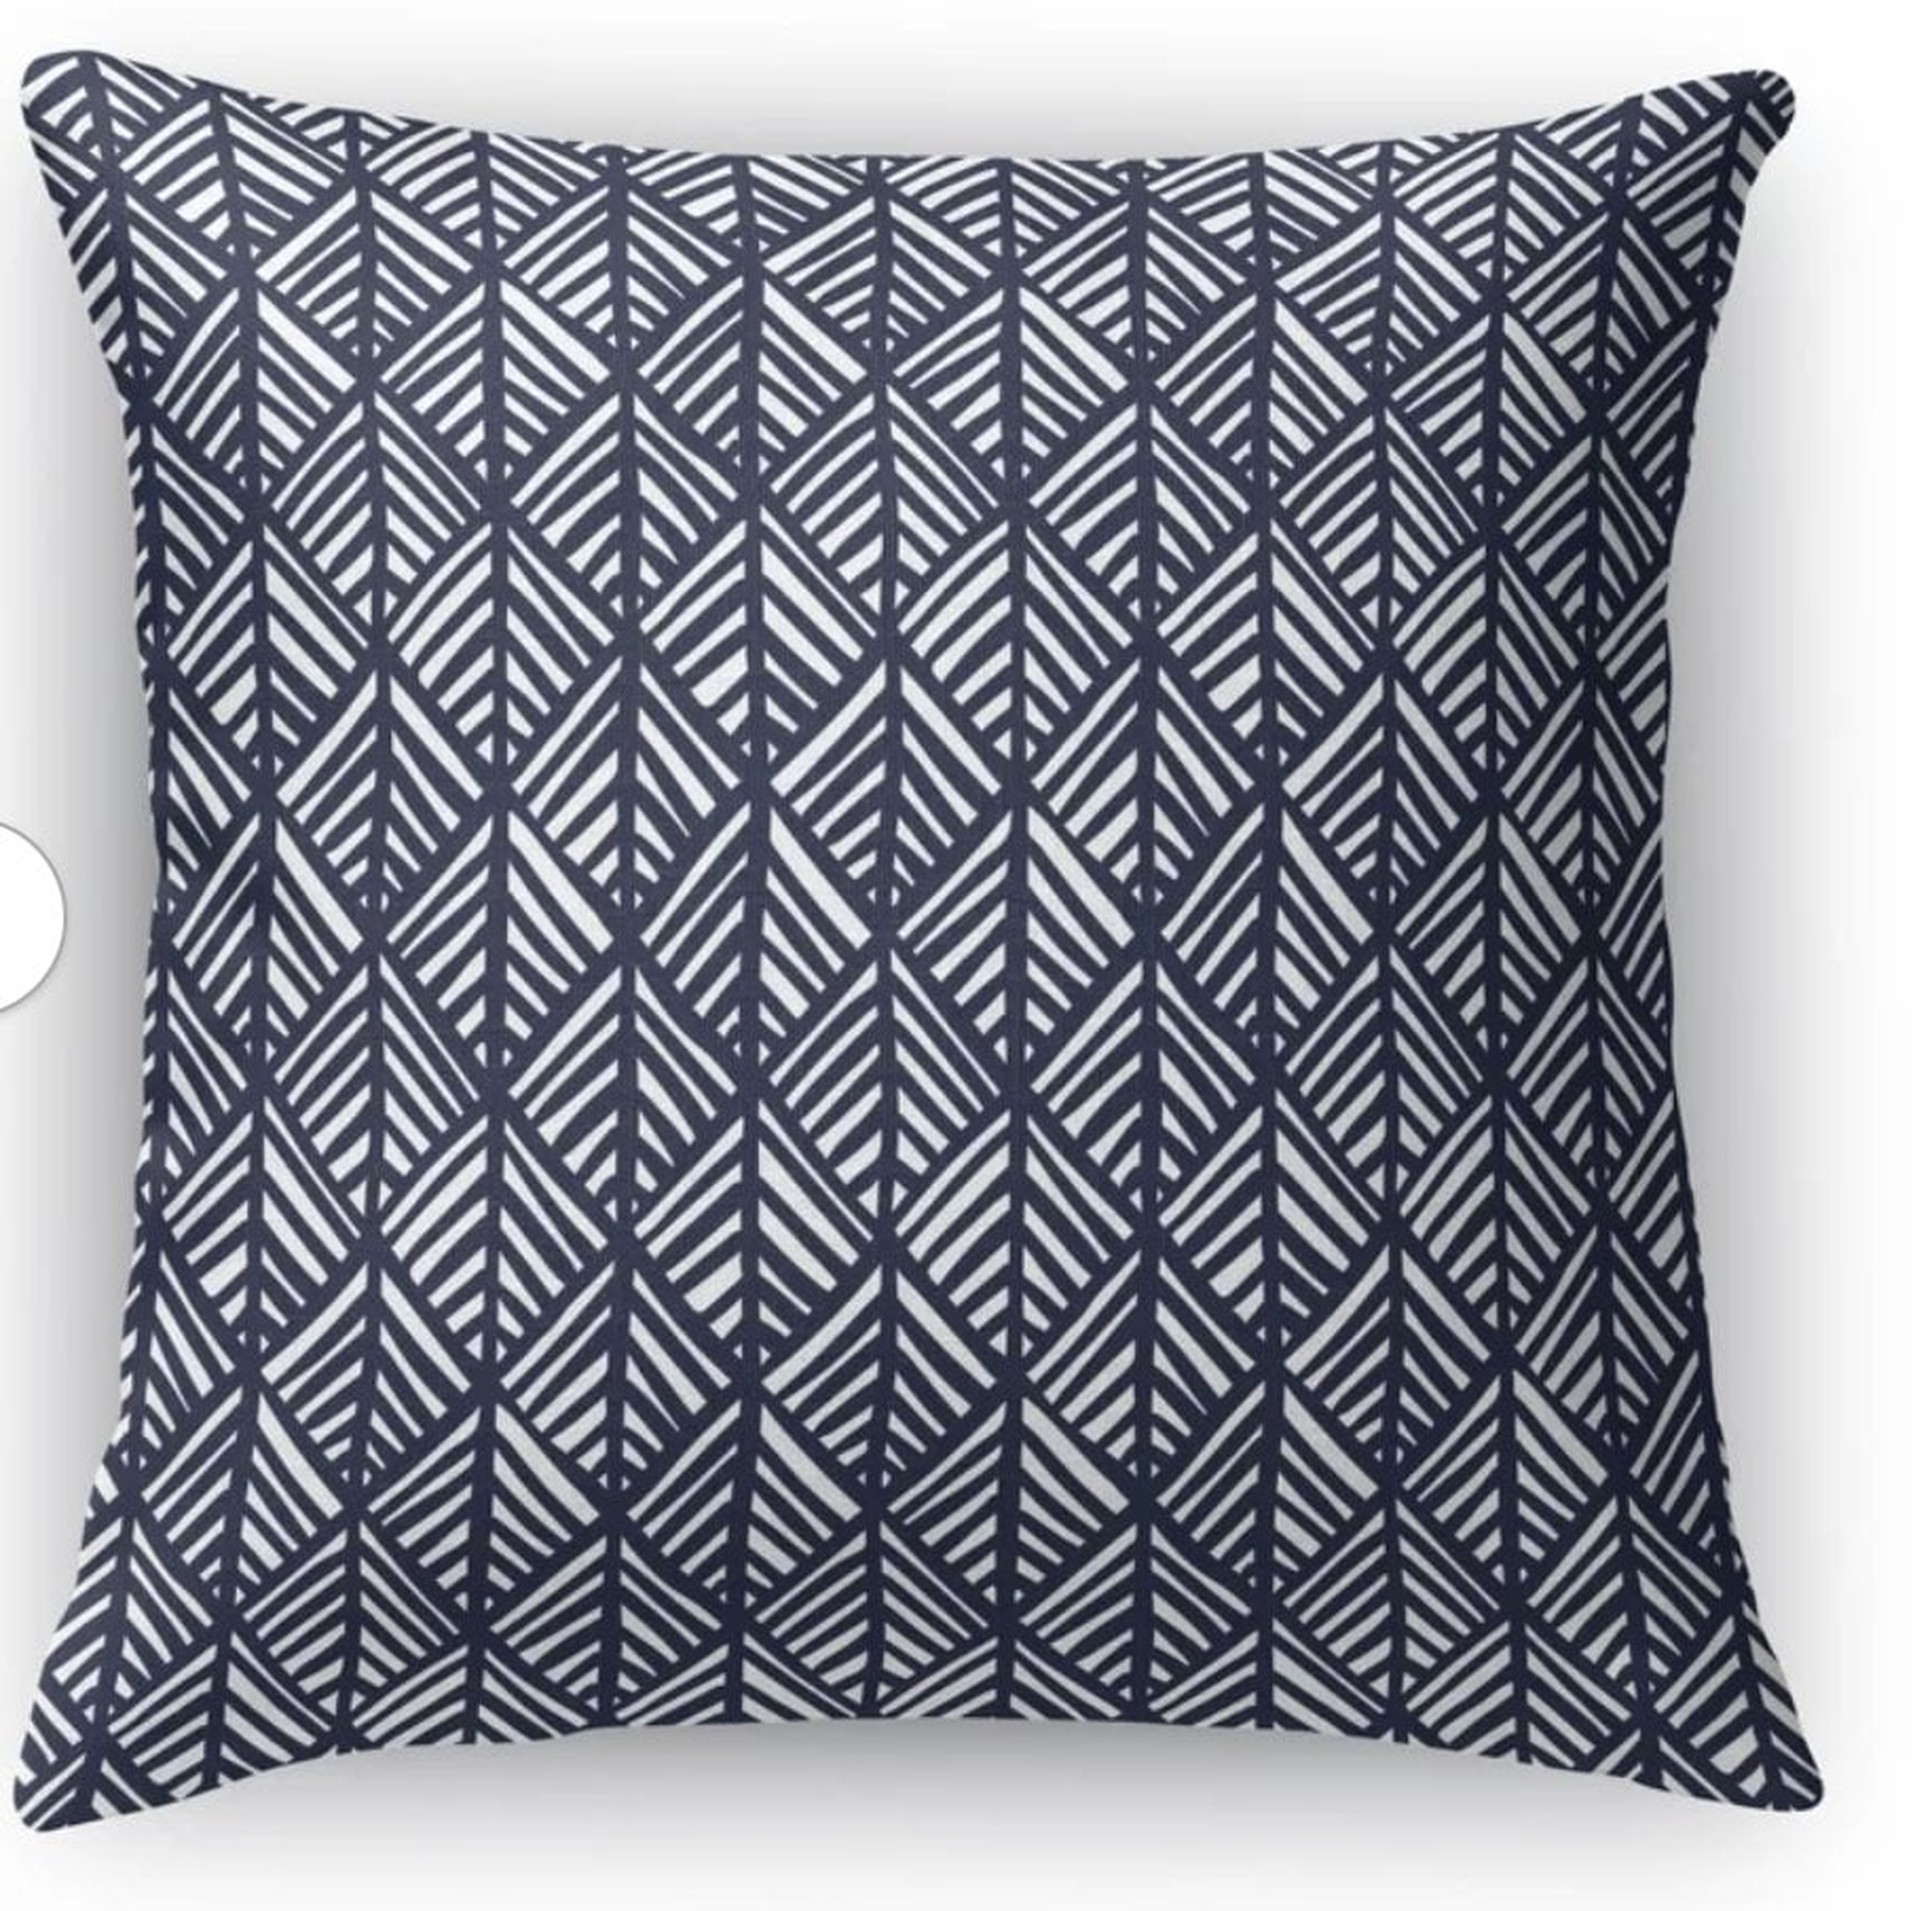 Jaren pillow blue 18" x 18" - Wayfair